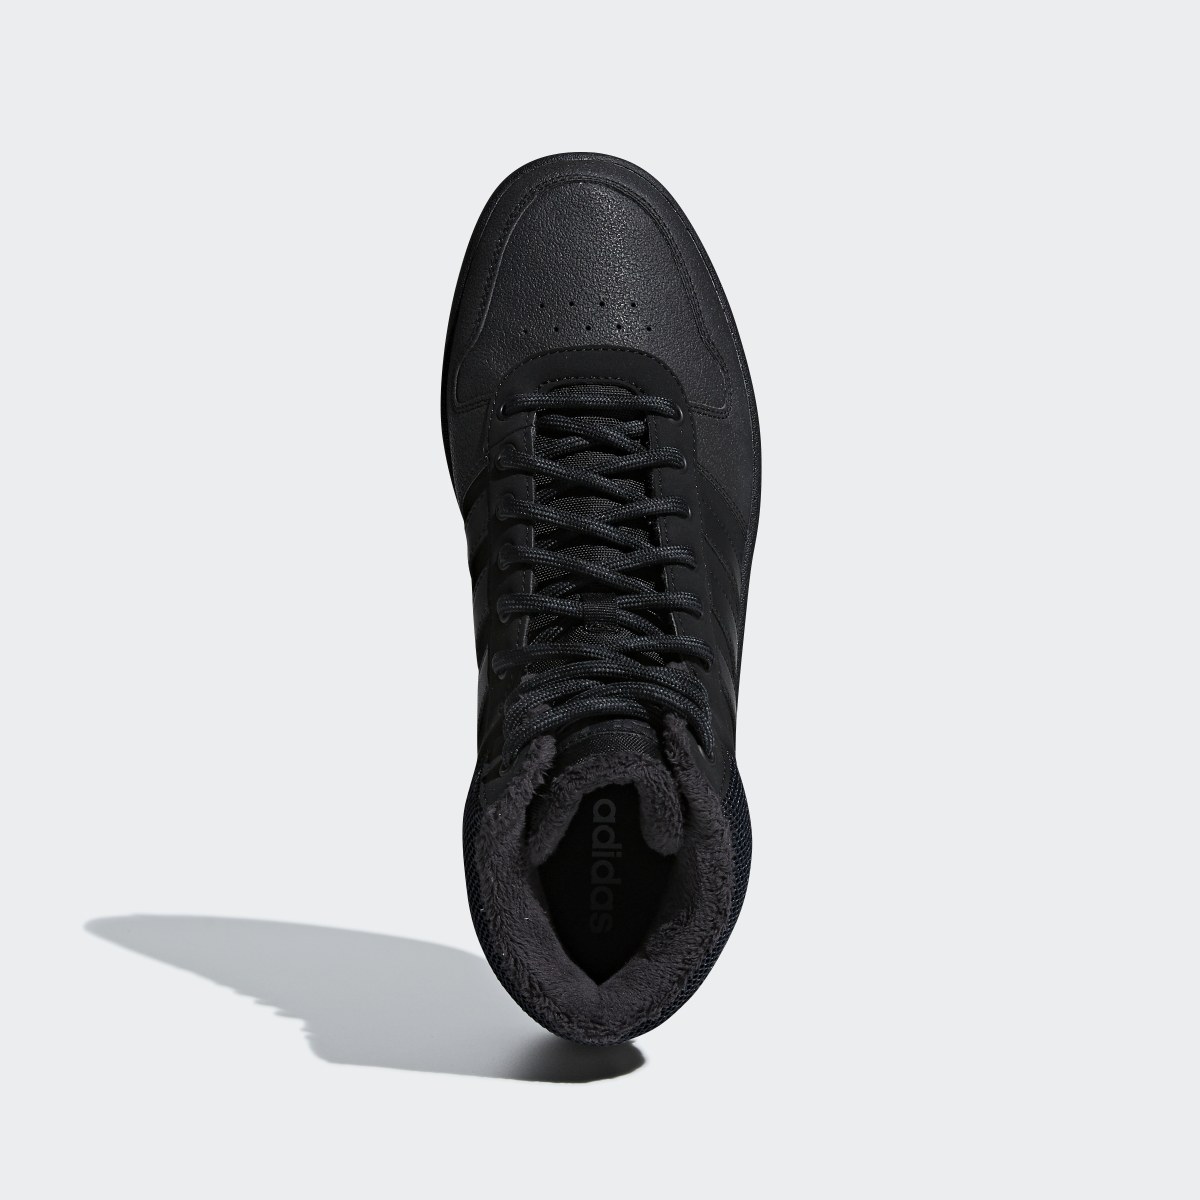 Adidas Scarpe Hoops 2.0 Mid. 4